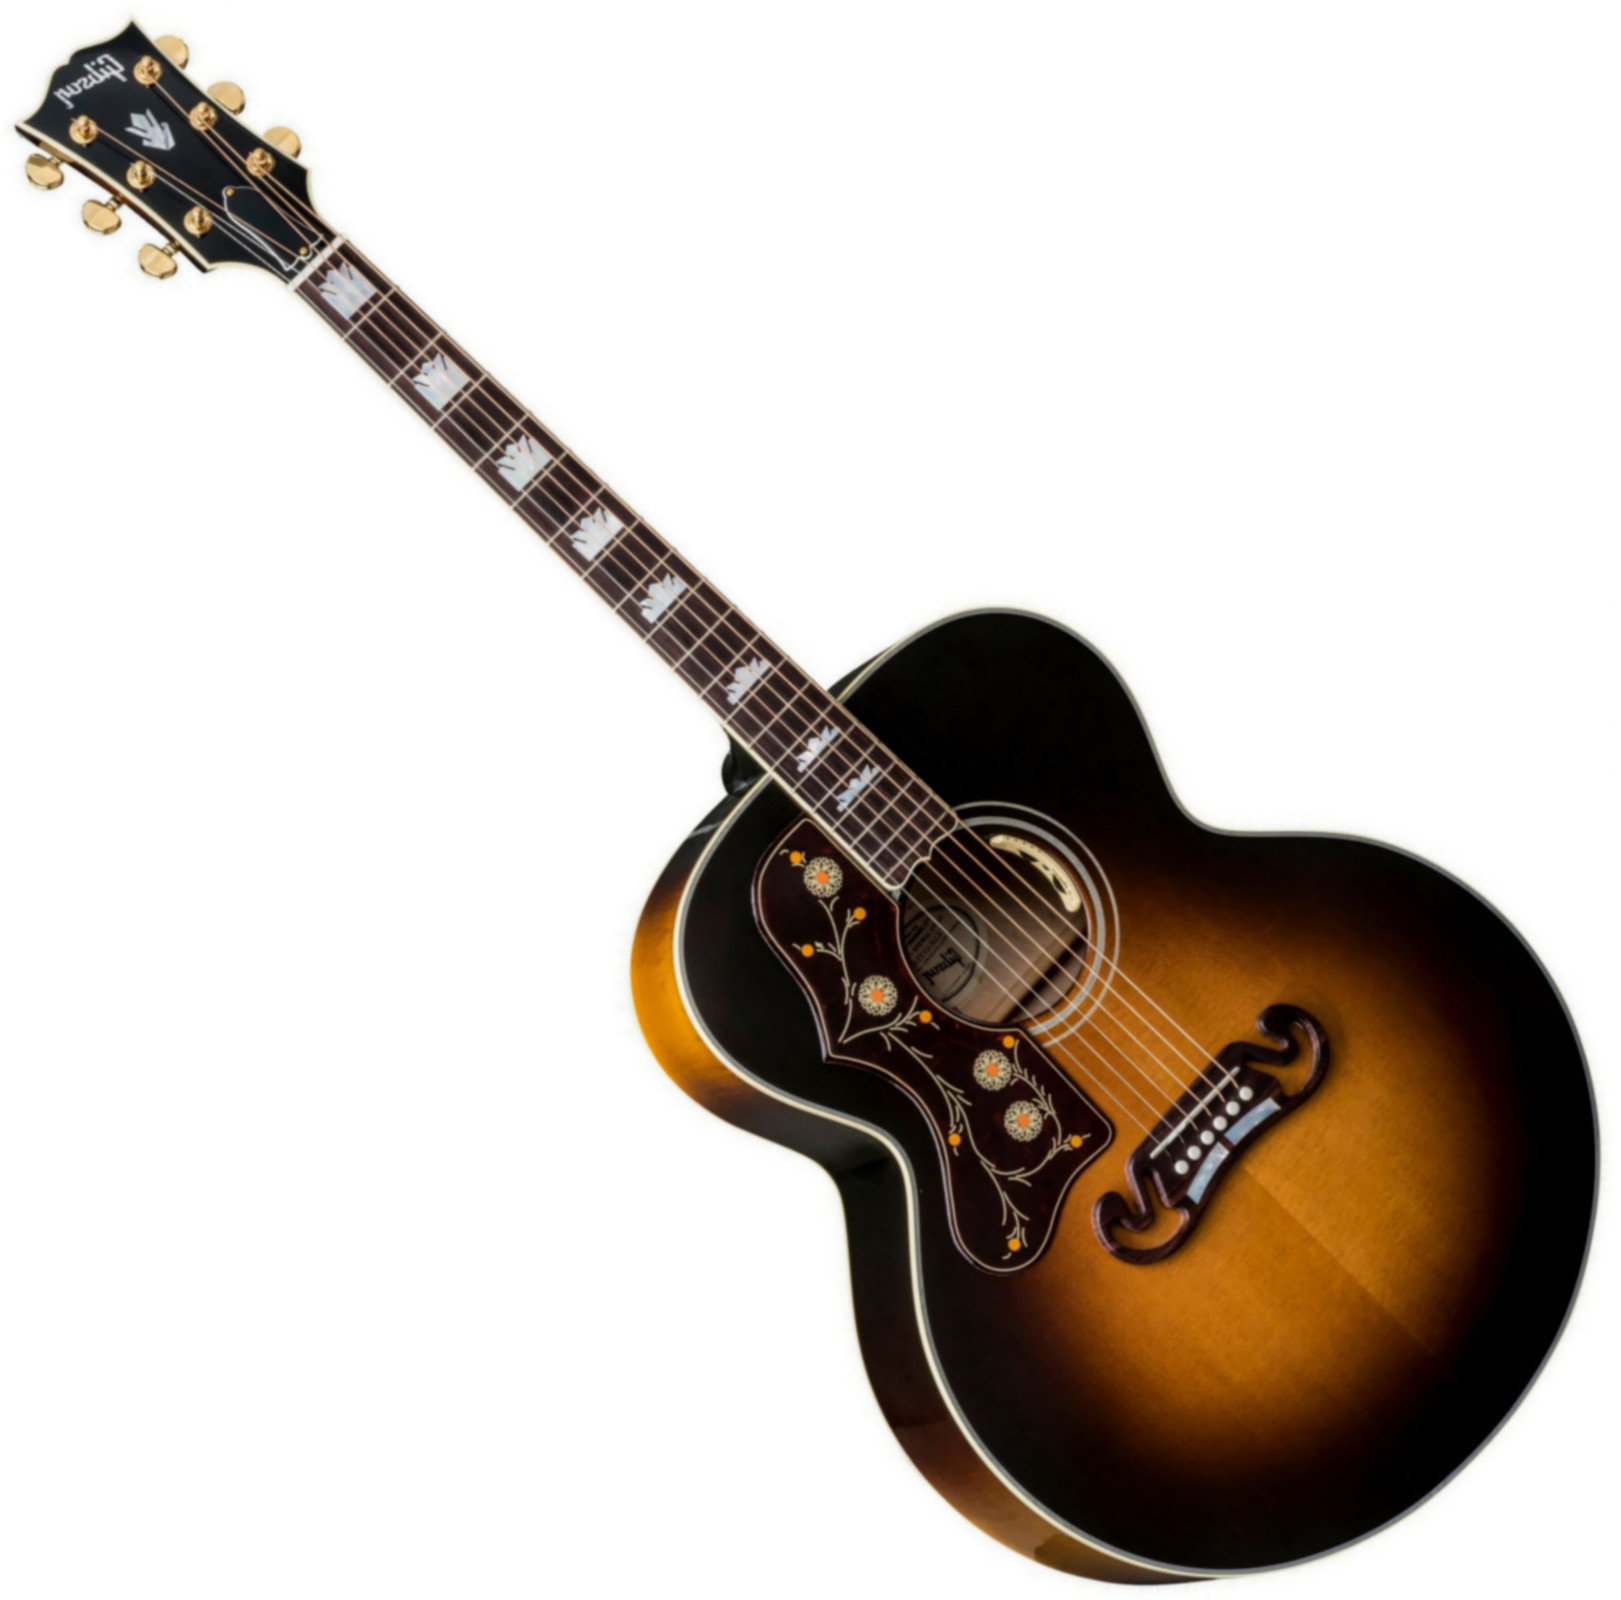 Elektroakustická kytara Jumbo Gibson J-200 Standard 2019 Vintage Sunburst Lefty